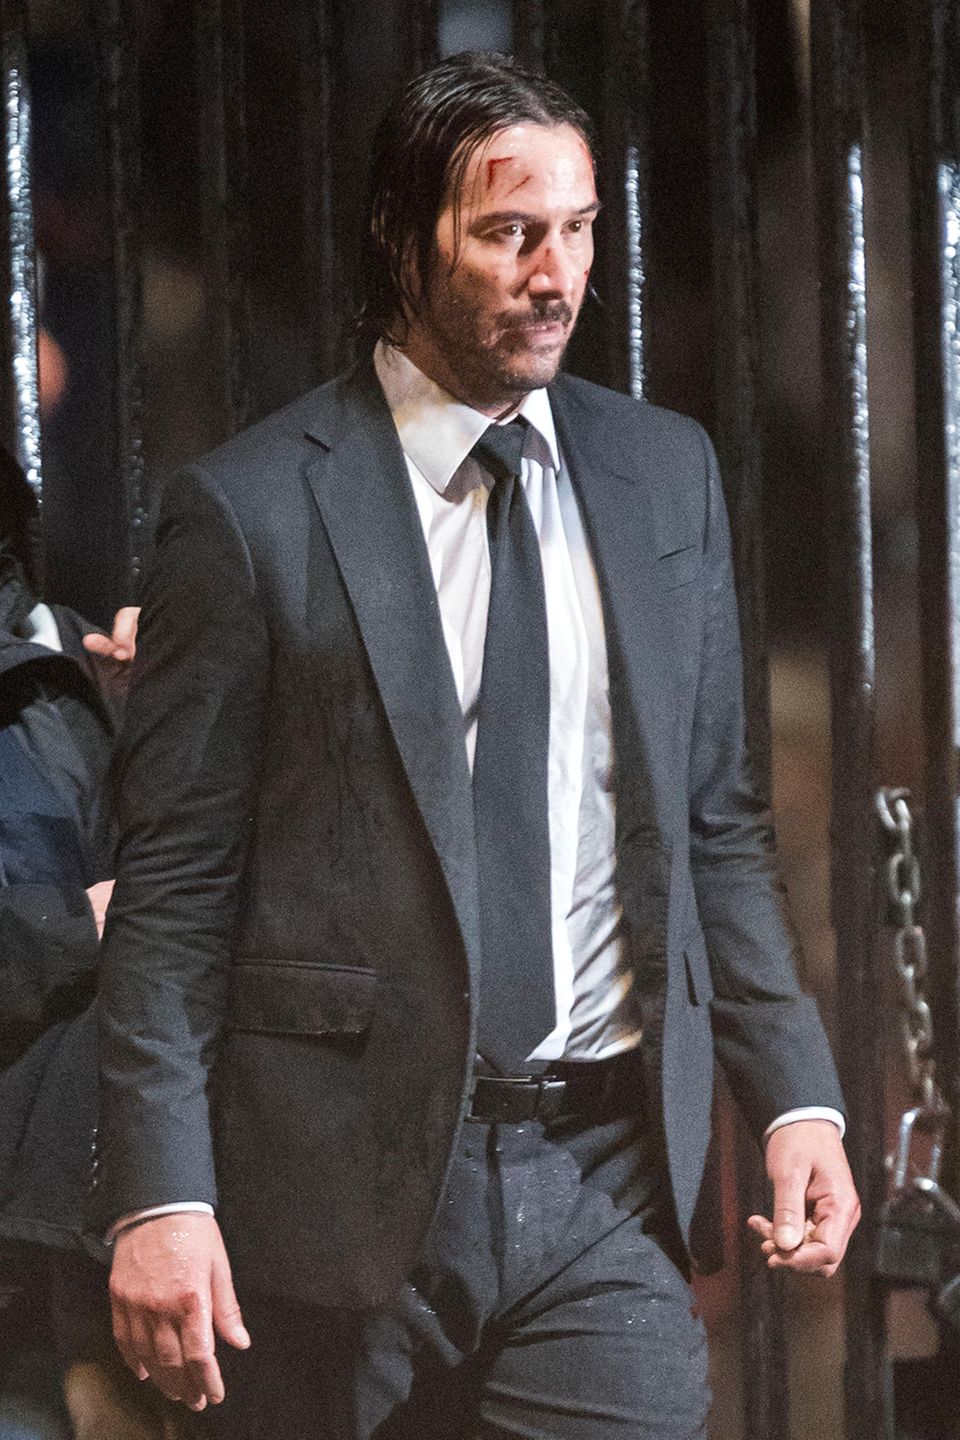 Am Set für den Film "John Wick 2" in New York schaut der Hauptdarsteller Keanu Reeves ganz schön demoliert aus. Schrammen auf der Stirn zieren sein Gesicht. Zum Glück ja alles nur Make-up für den Film. 